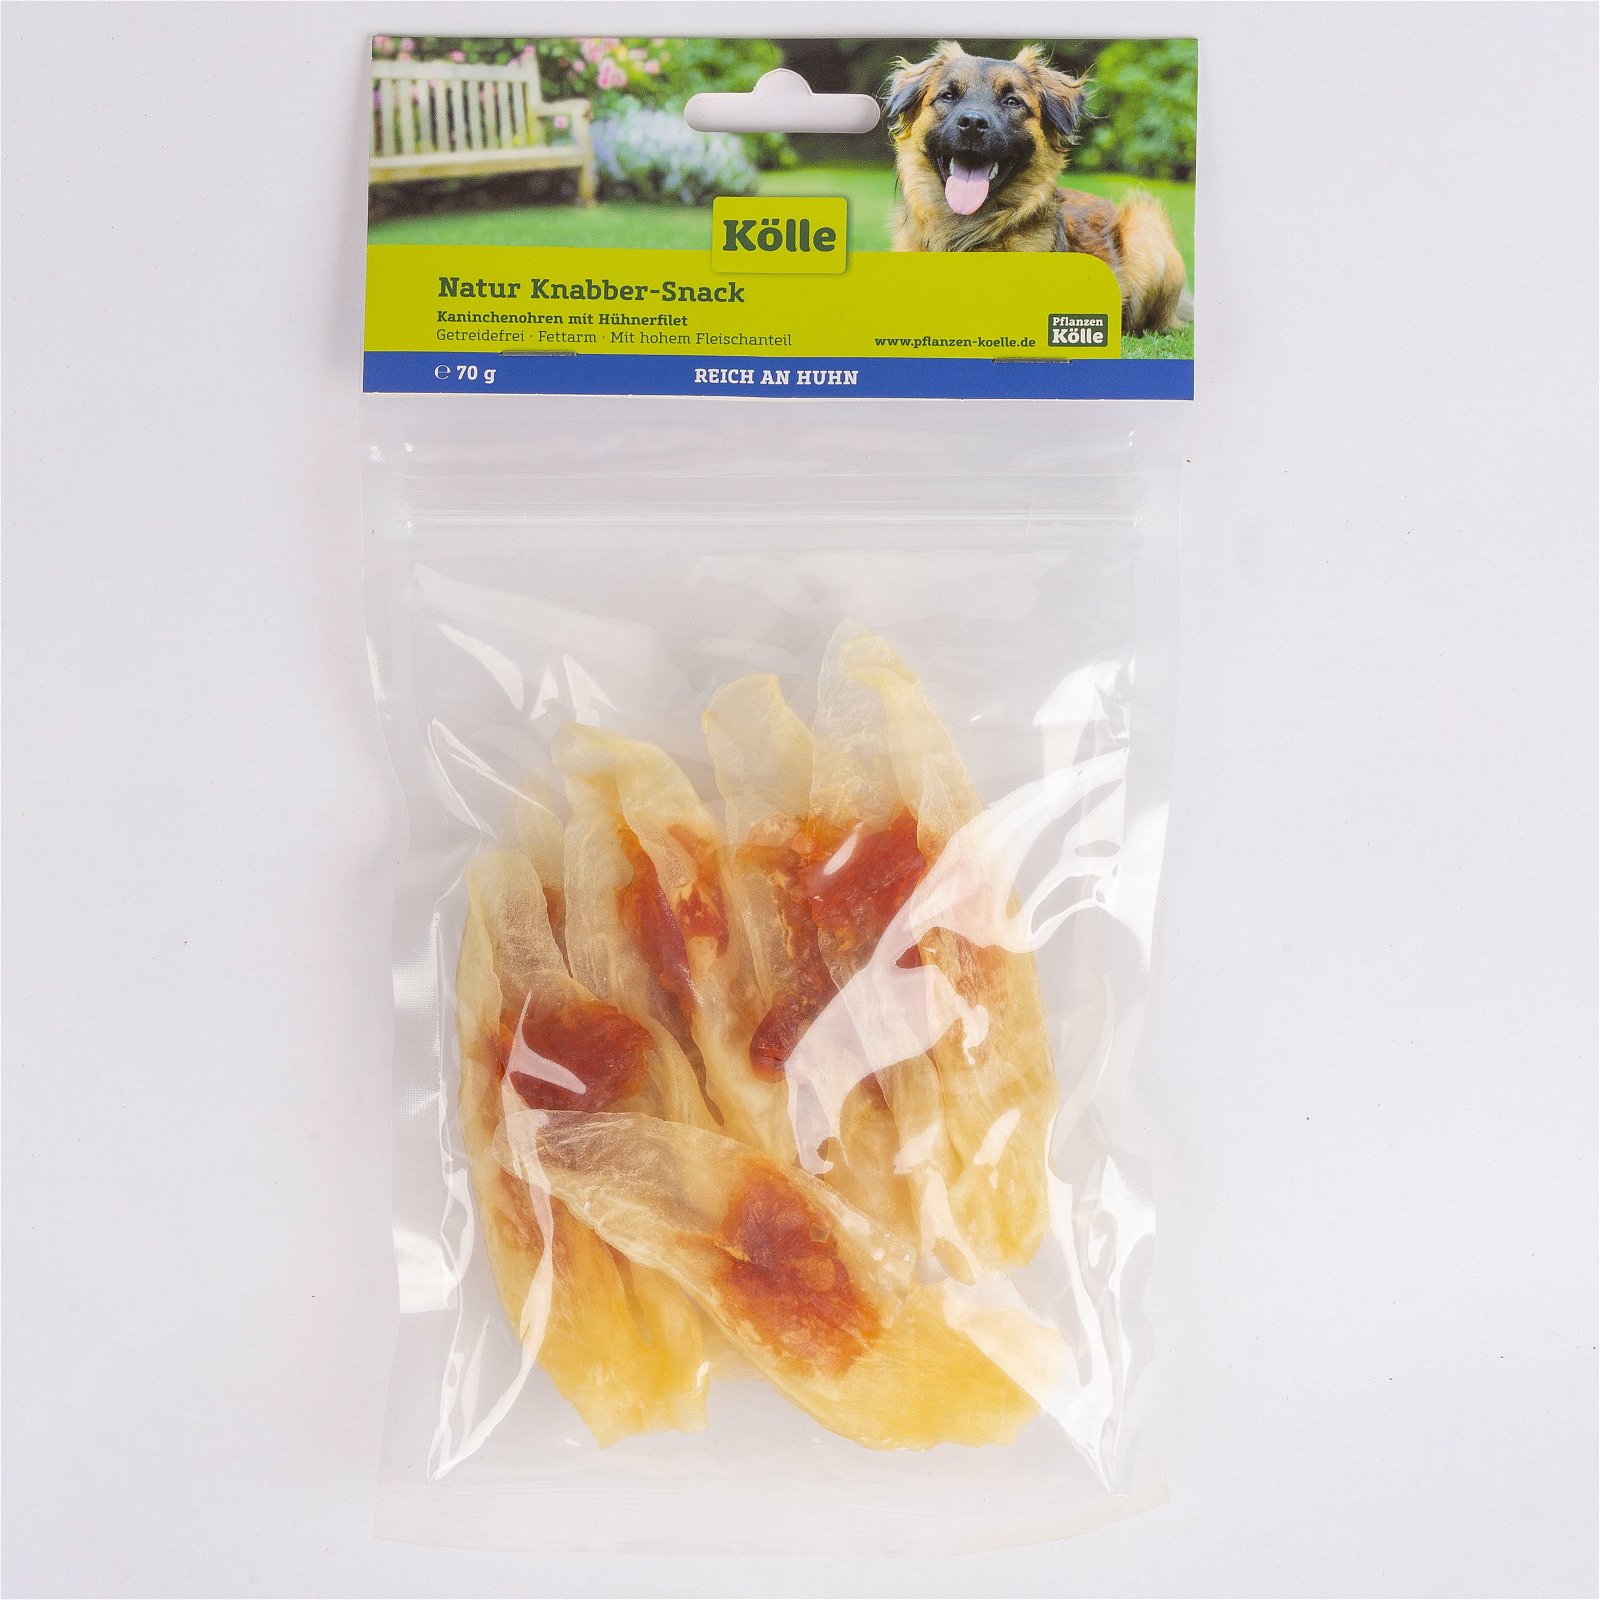 Natur Knabber-Snack für Hunde, Kaninchenohren mit Hühnerfilet, 150 g